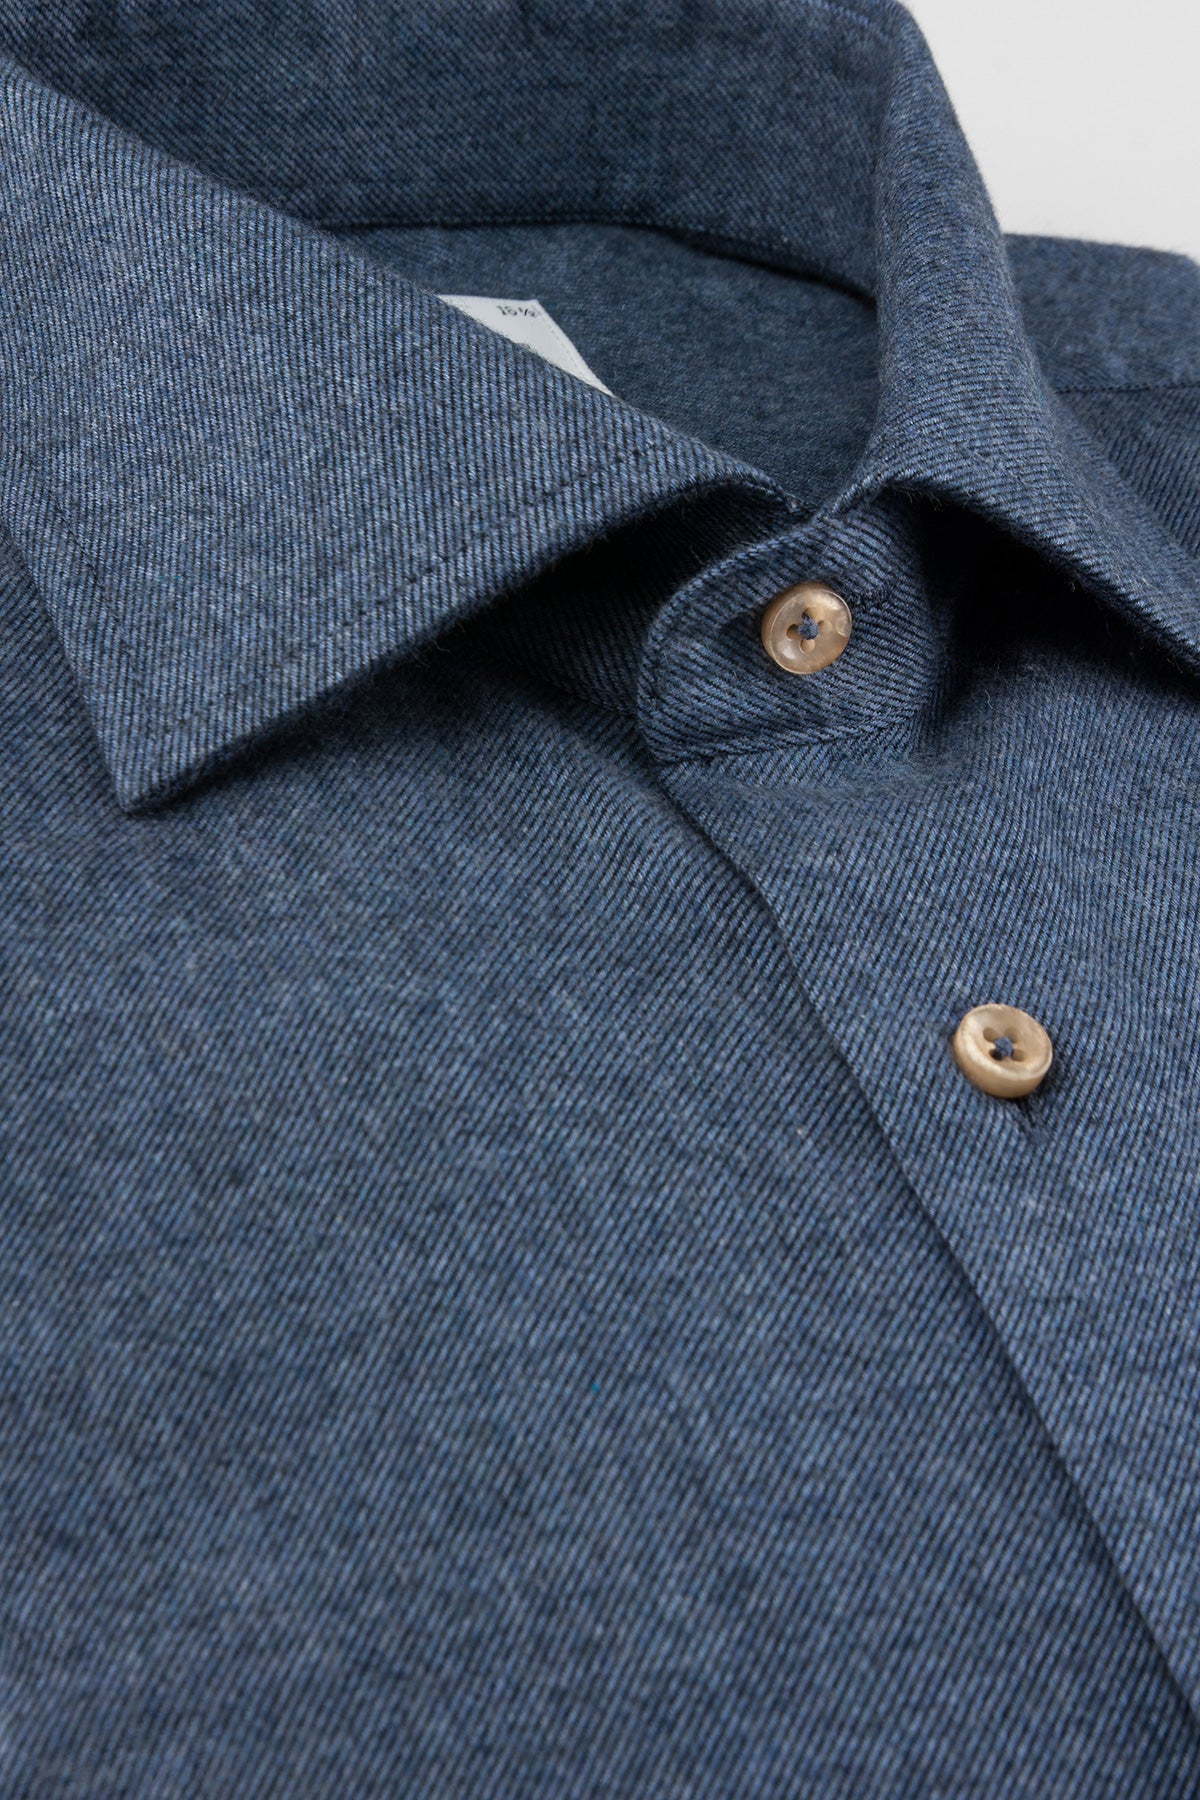 Blue flannel regular fit shirt